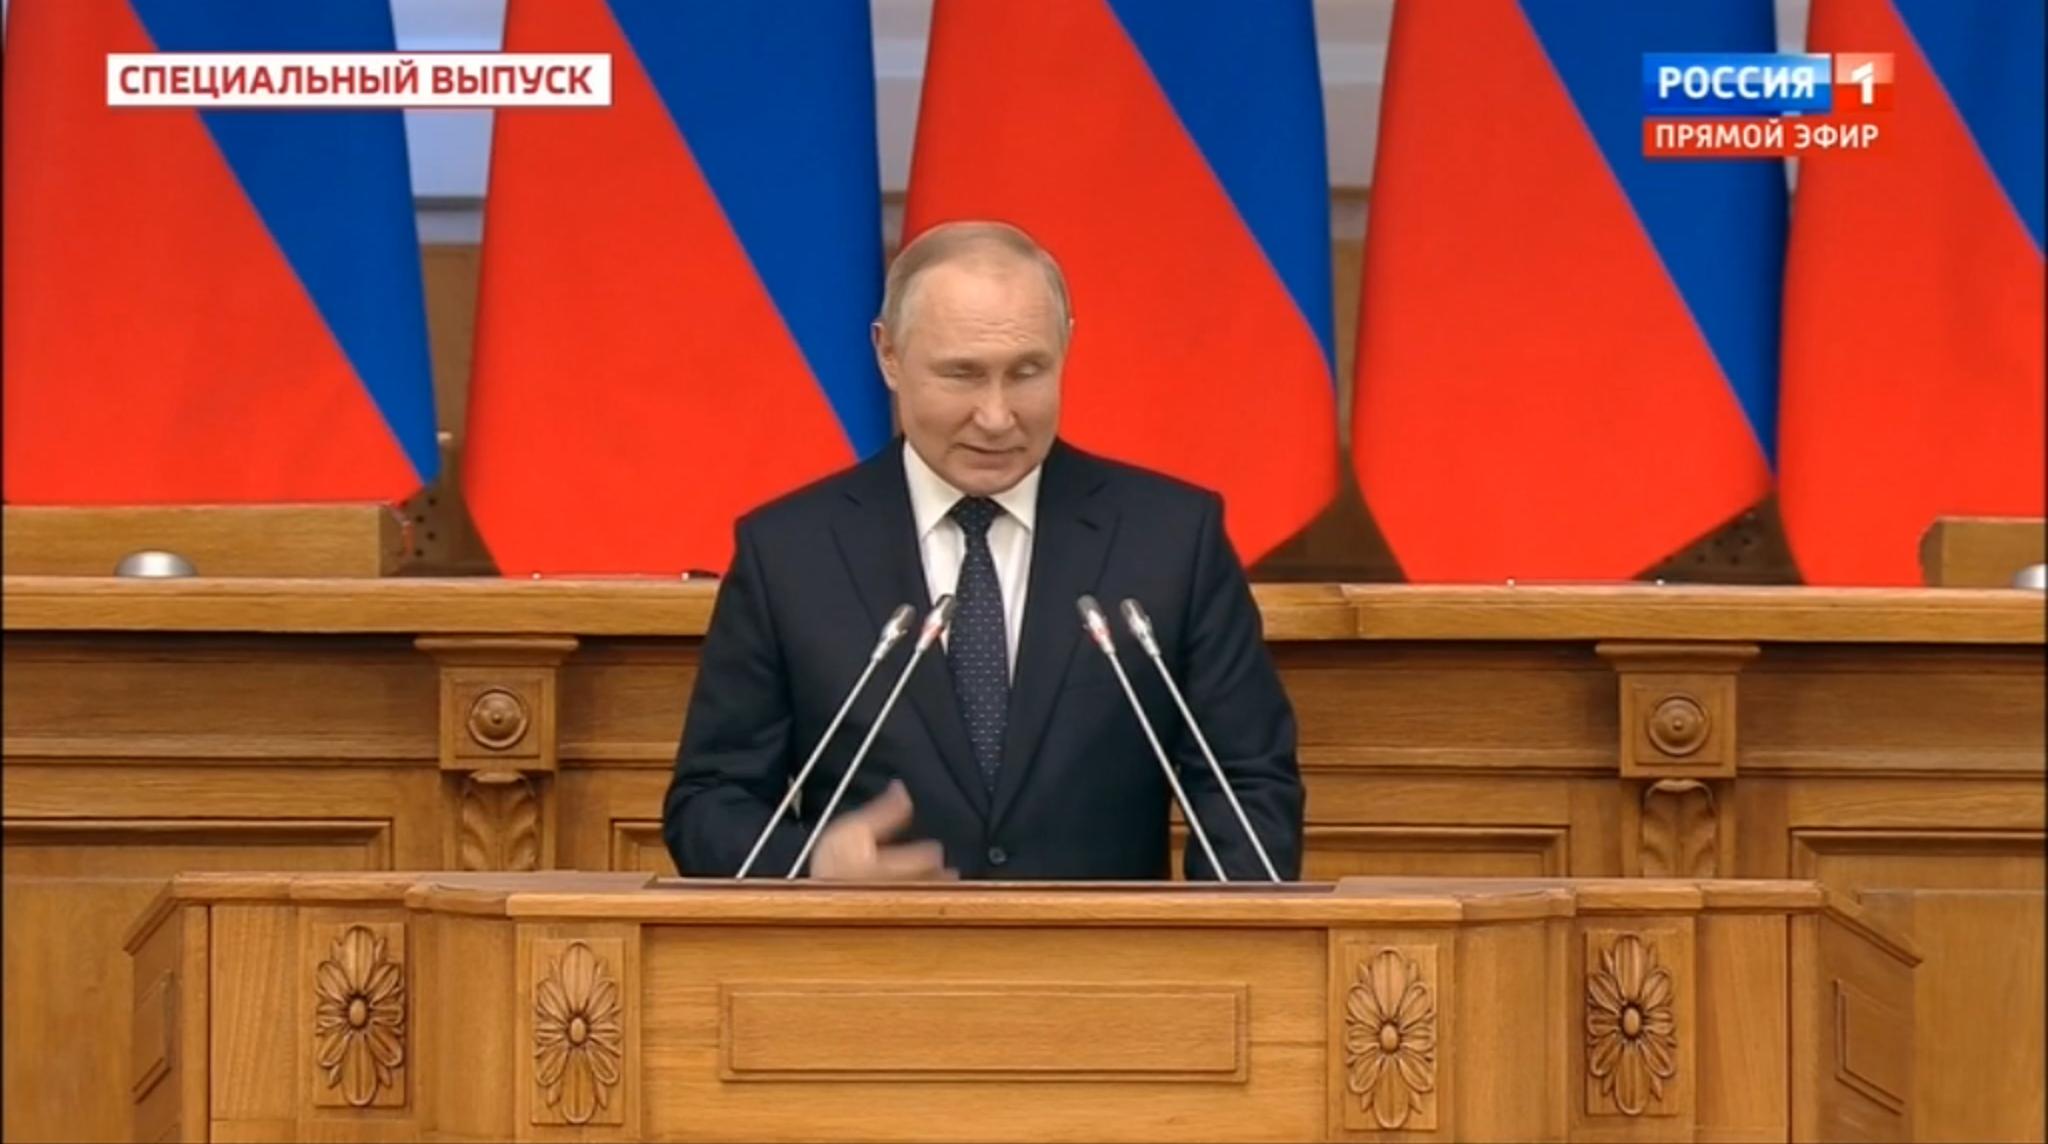 Mężczyzna (Putin) przemawia gestykulując i mrużąc oko